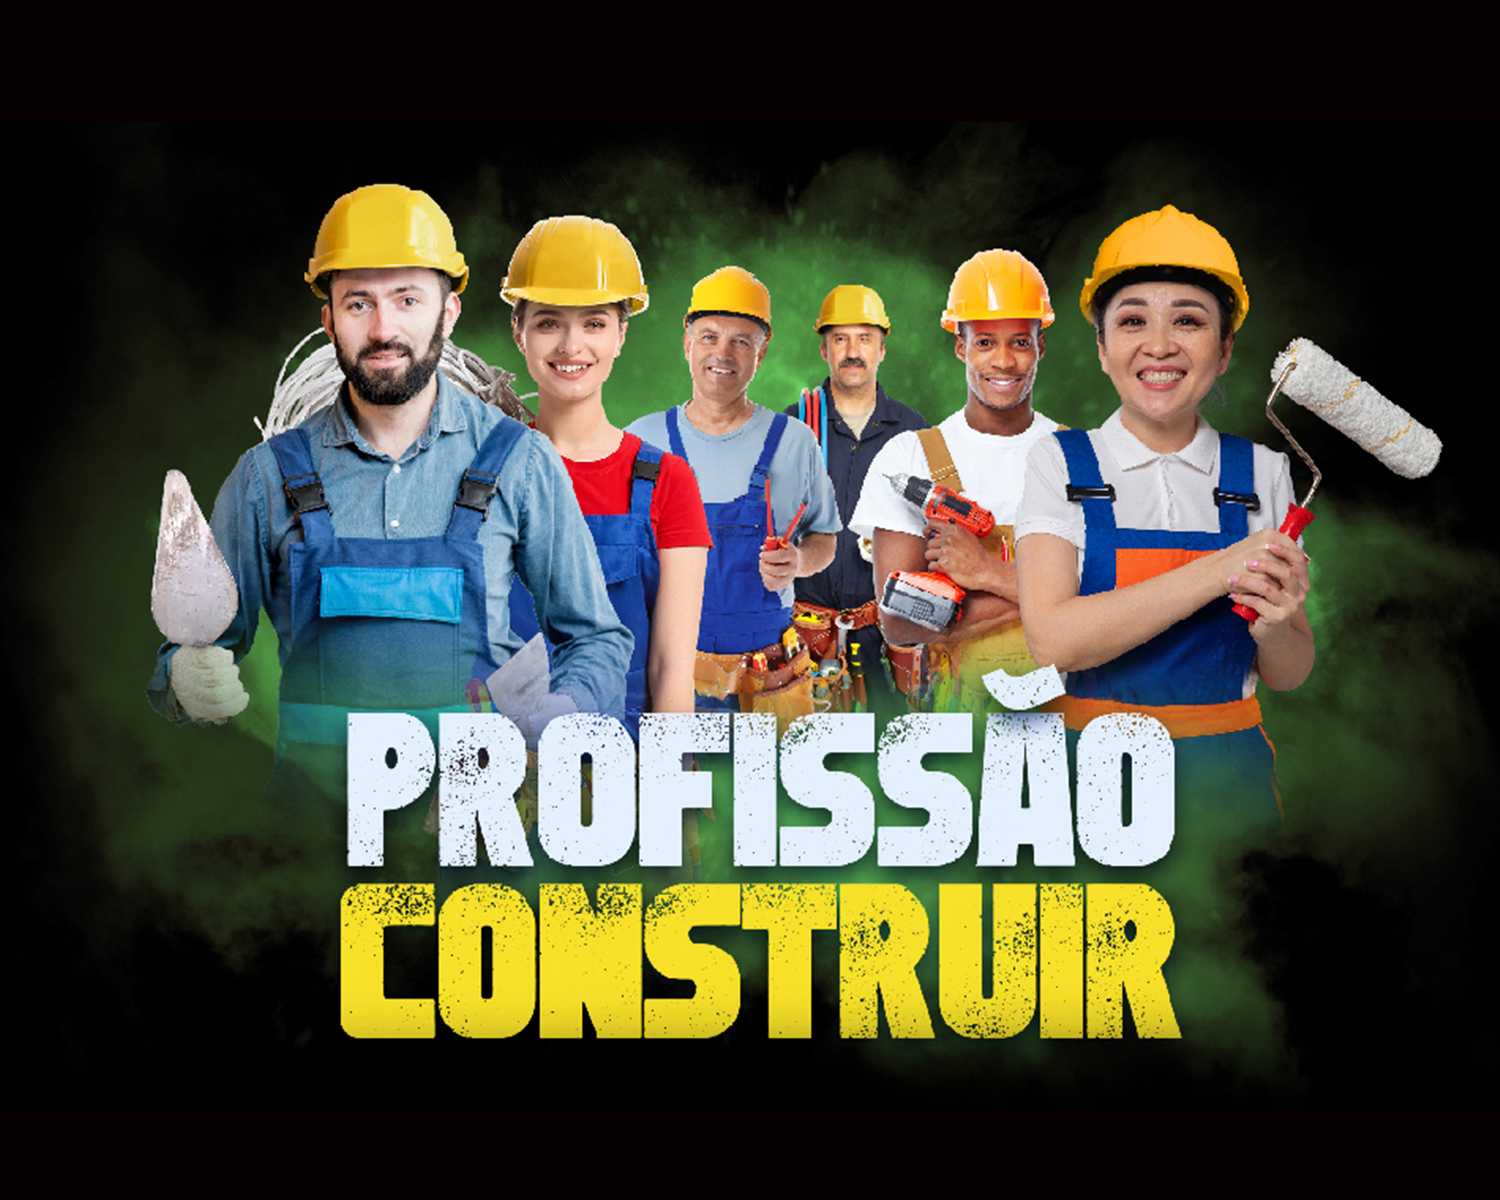 Profissao-Construir-é-uma-realização-do-Sinduscon-Joinville---FIESC-e-SENAI---SEBRAE-Santa-Catarina